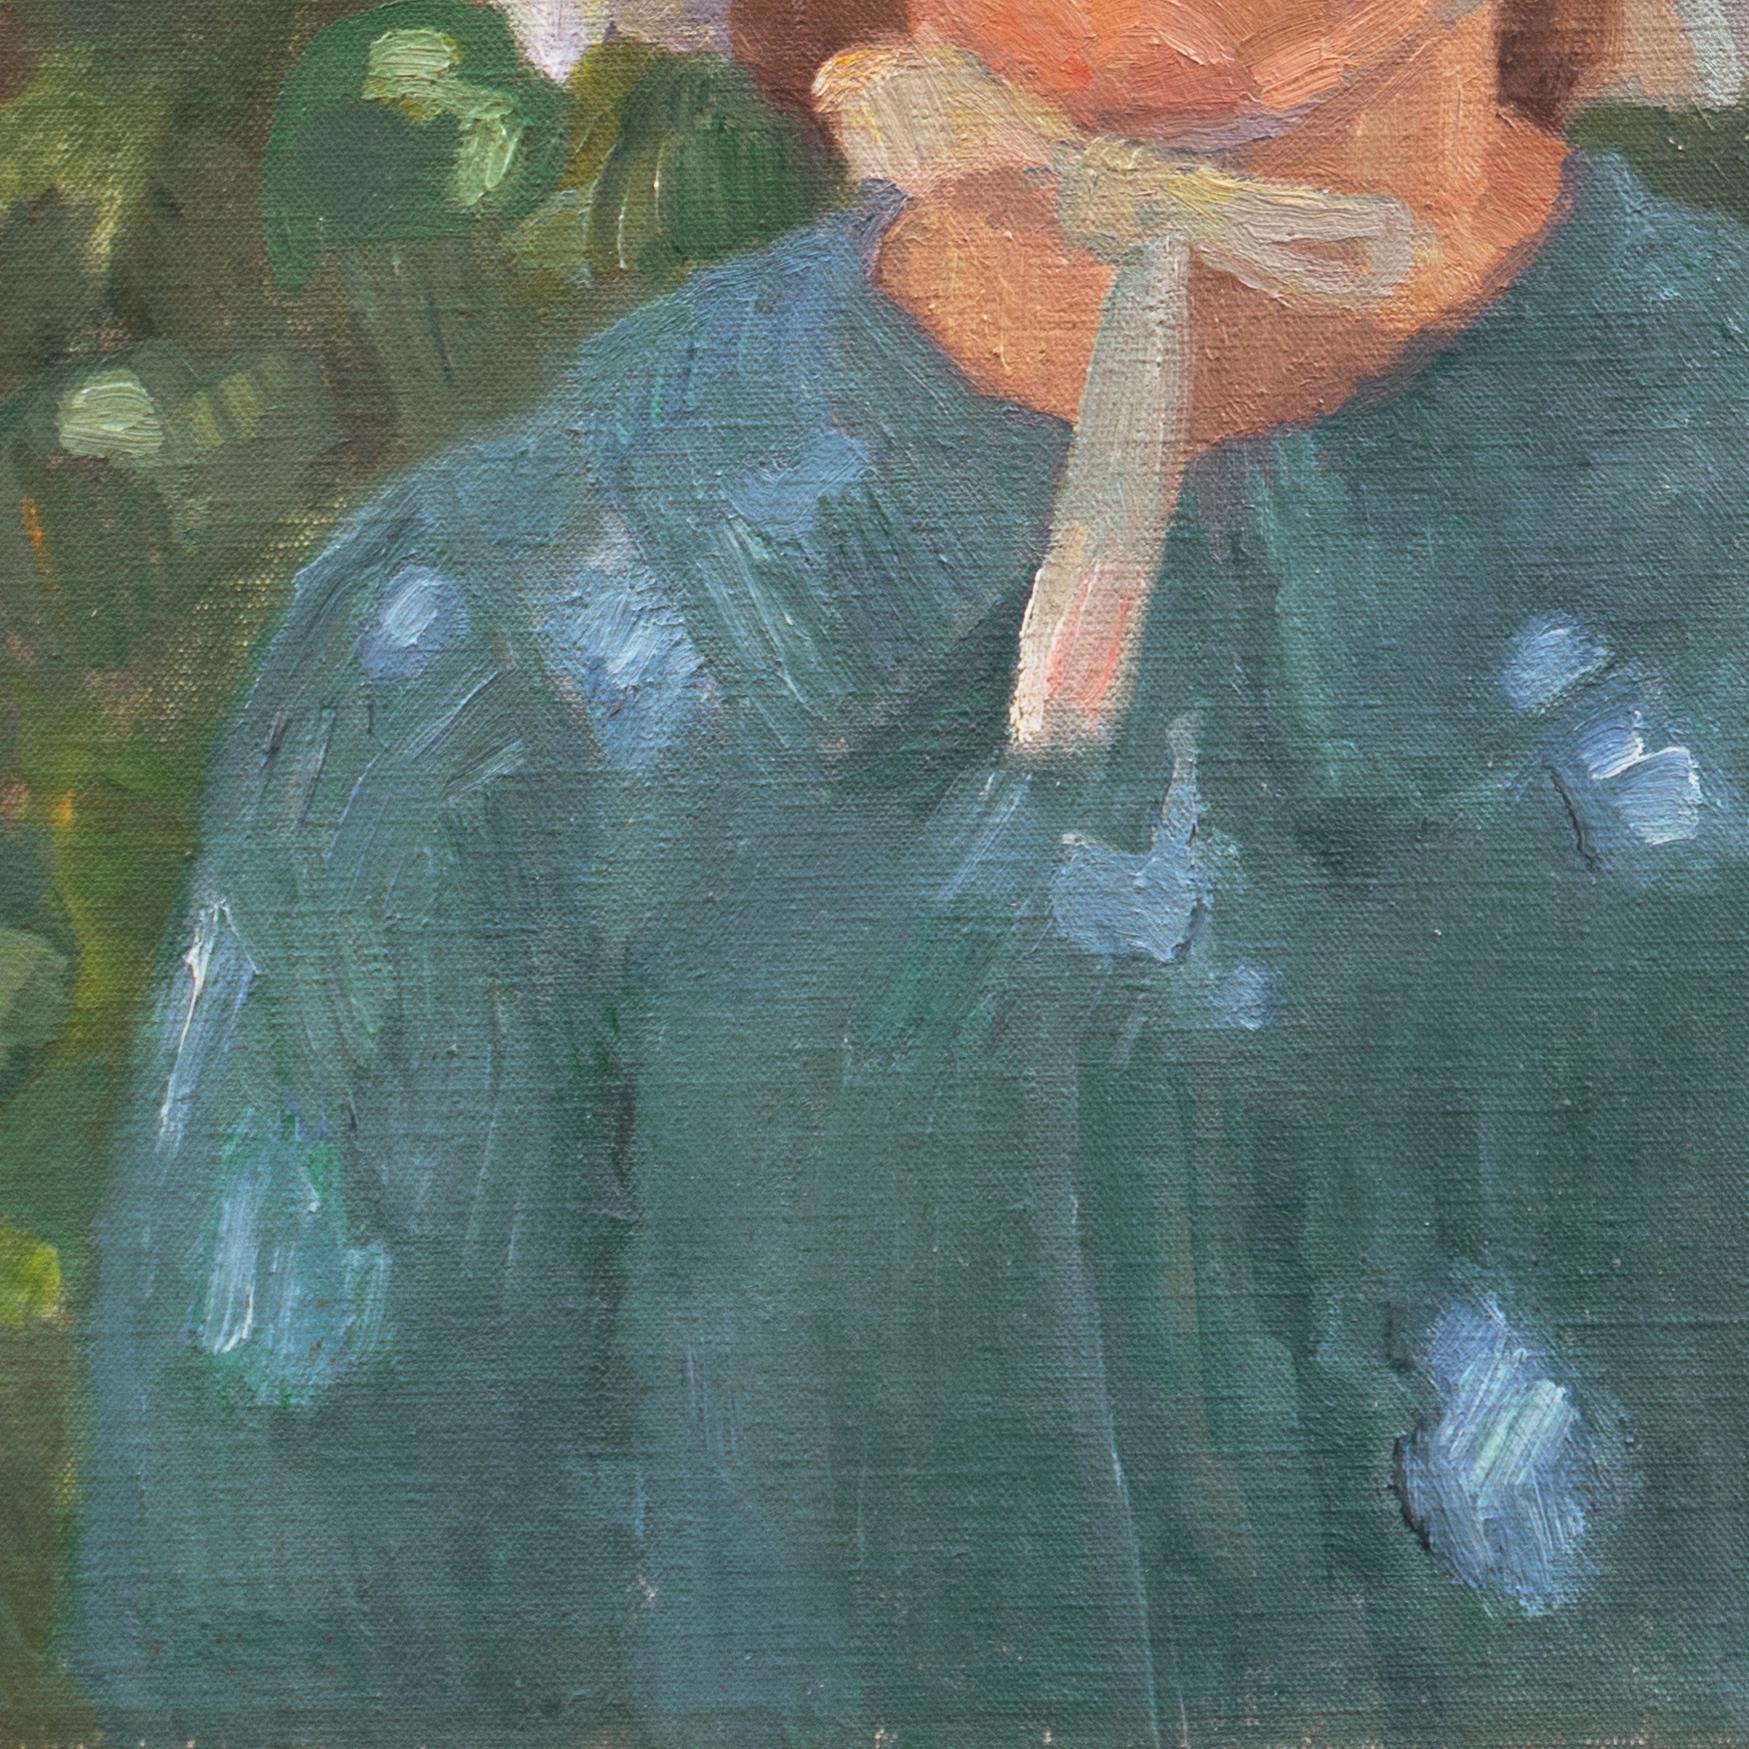 portrait of an elderly woman in a white bonnet